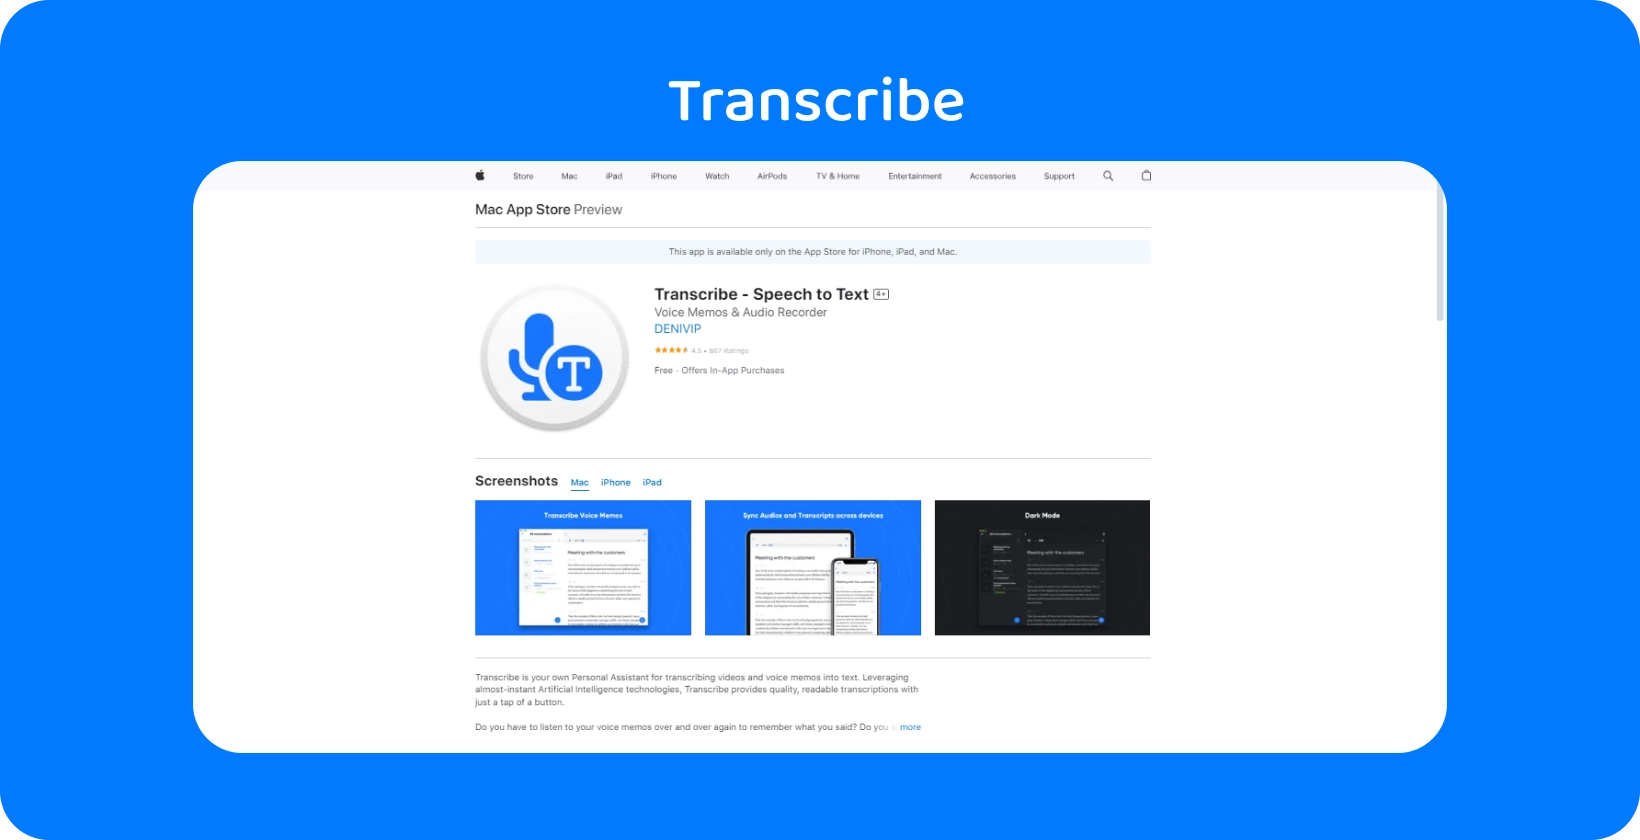 Zrzut ekranu aplikacji Transkrypcja na Mac App Store, podkreślający jej możliwości zamiany mowy na tekst.